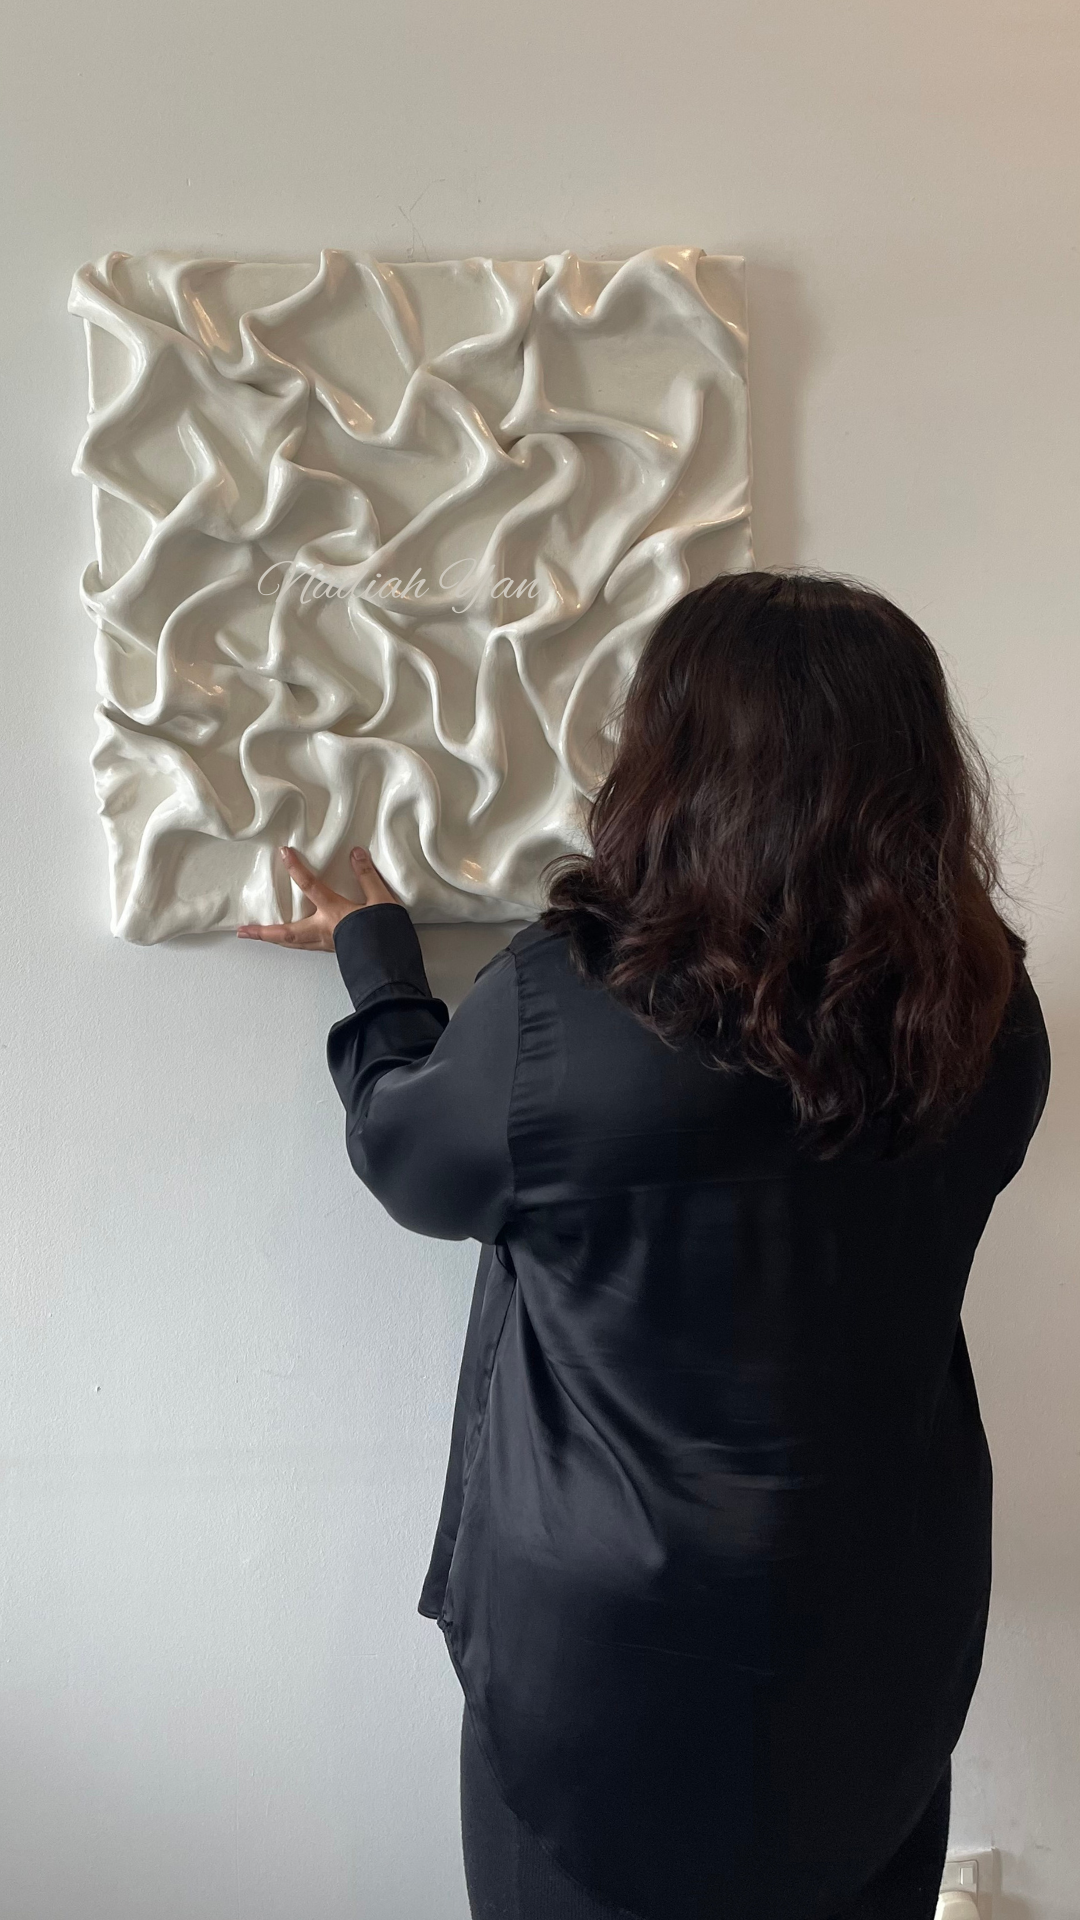 Nadiah yan, looking at her abstract painting